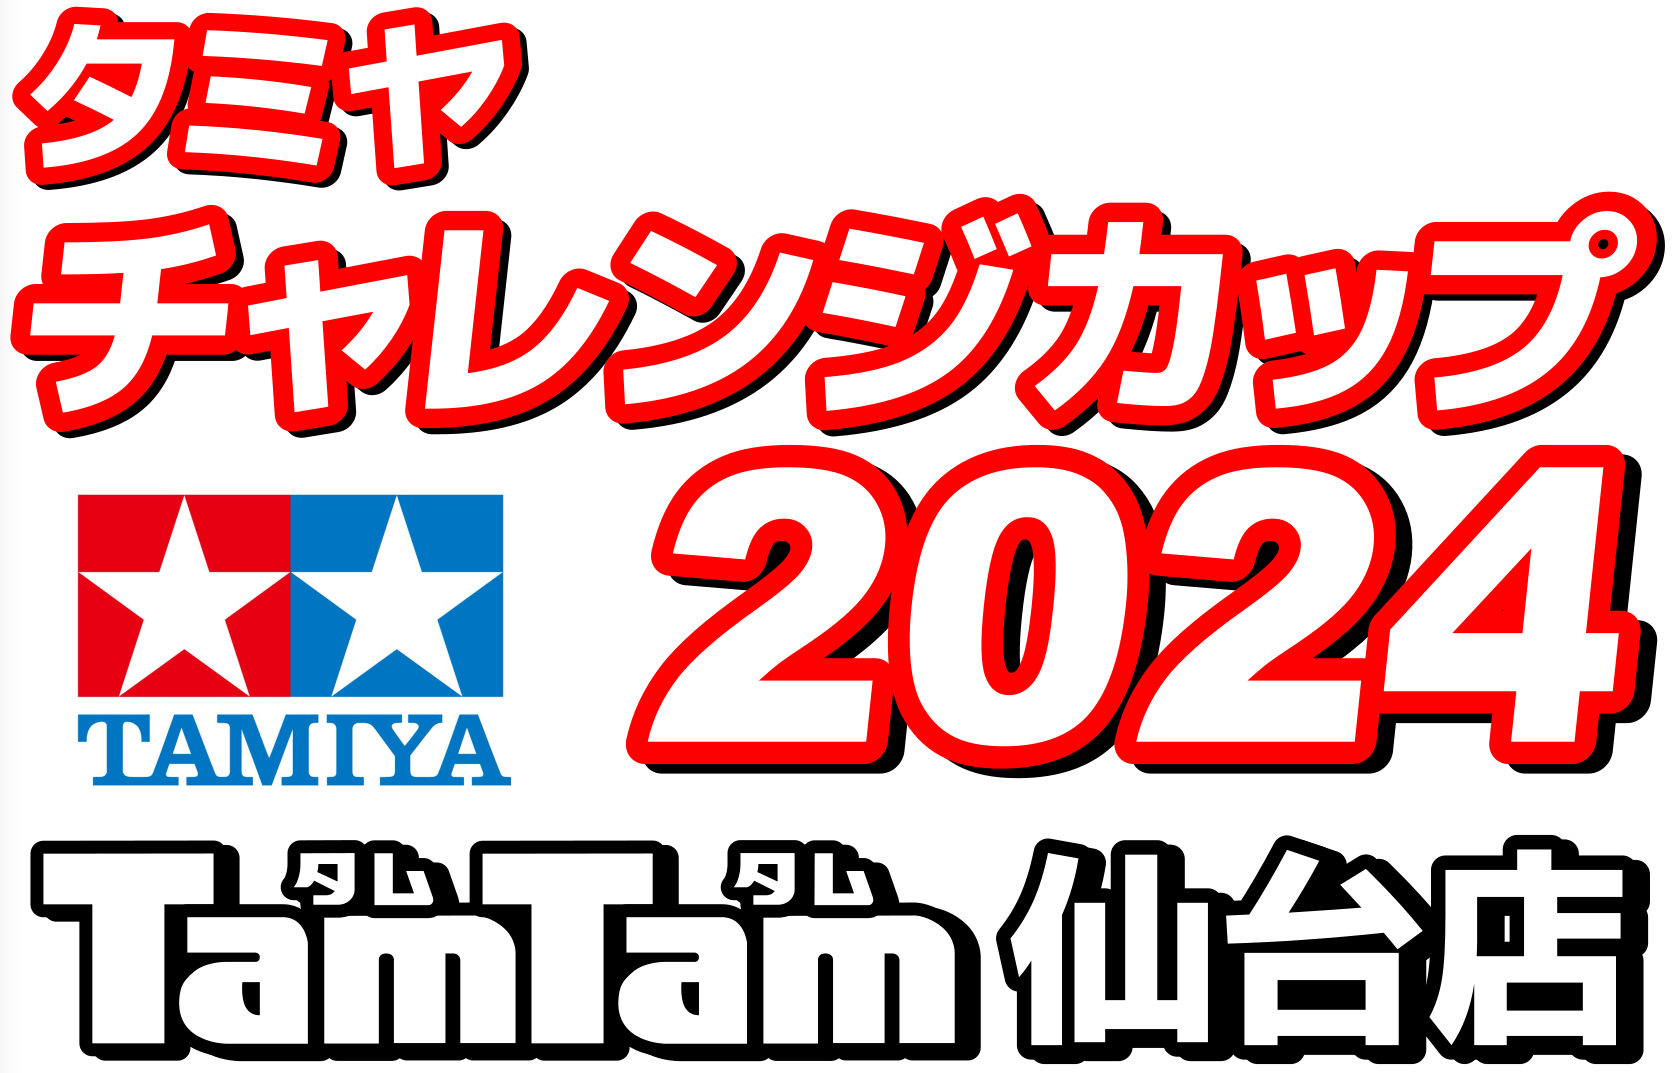 〈RC/レースイベント〉3/3 タミヤチャレンジカップ 2024開催のお知らせ